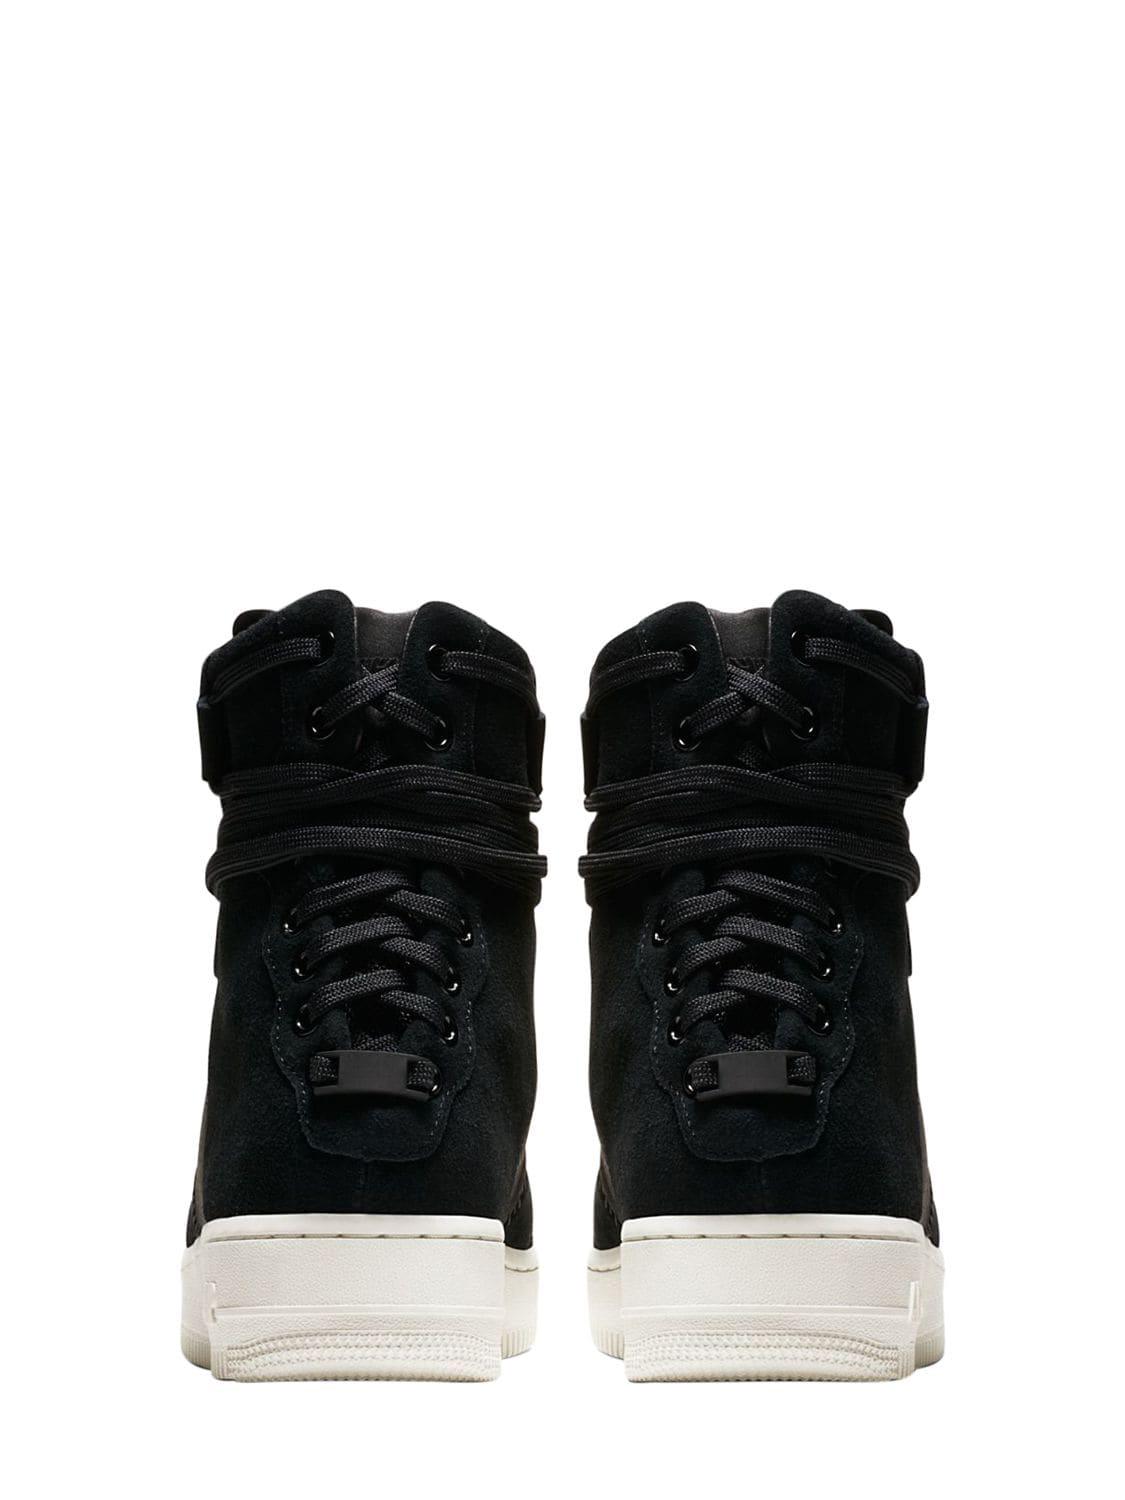 Nike Leather Af1 Rebel Xx Prm Sneakers in Black - Lyst